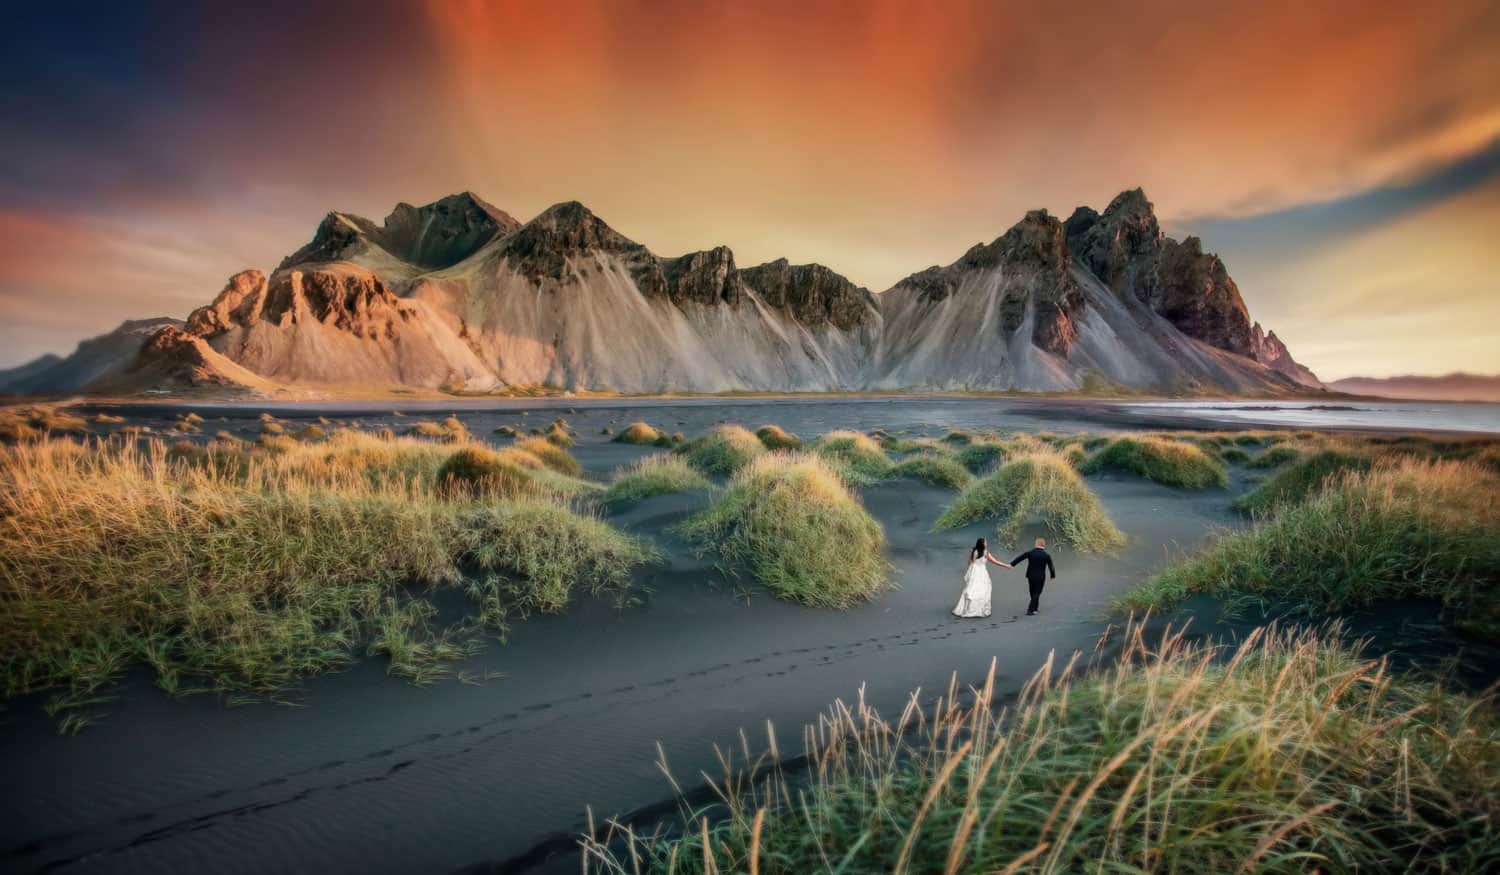 Iceland destination wedding